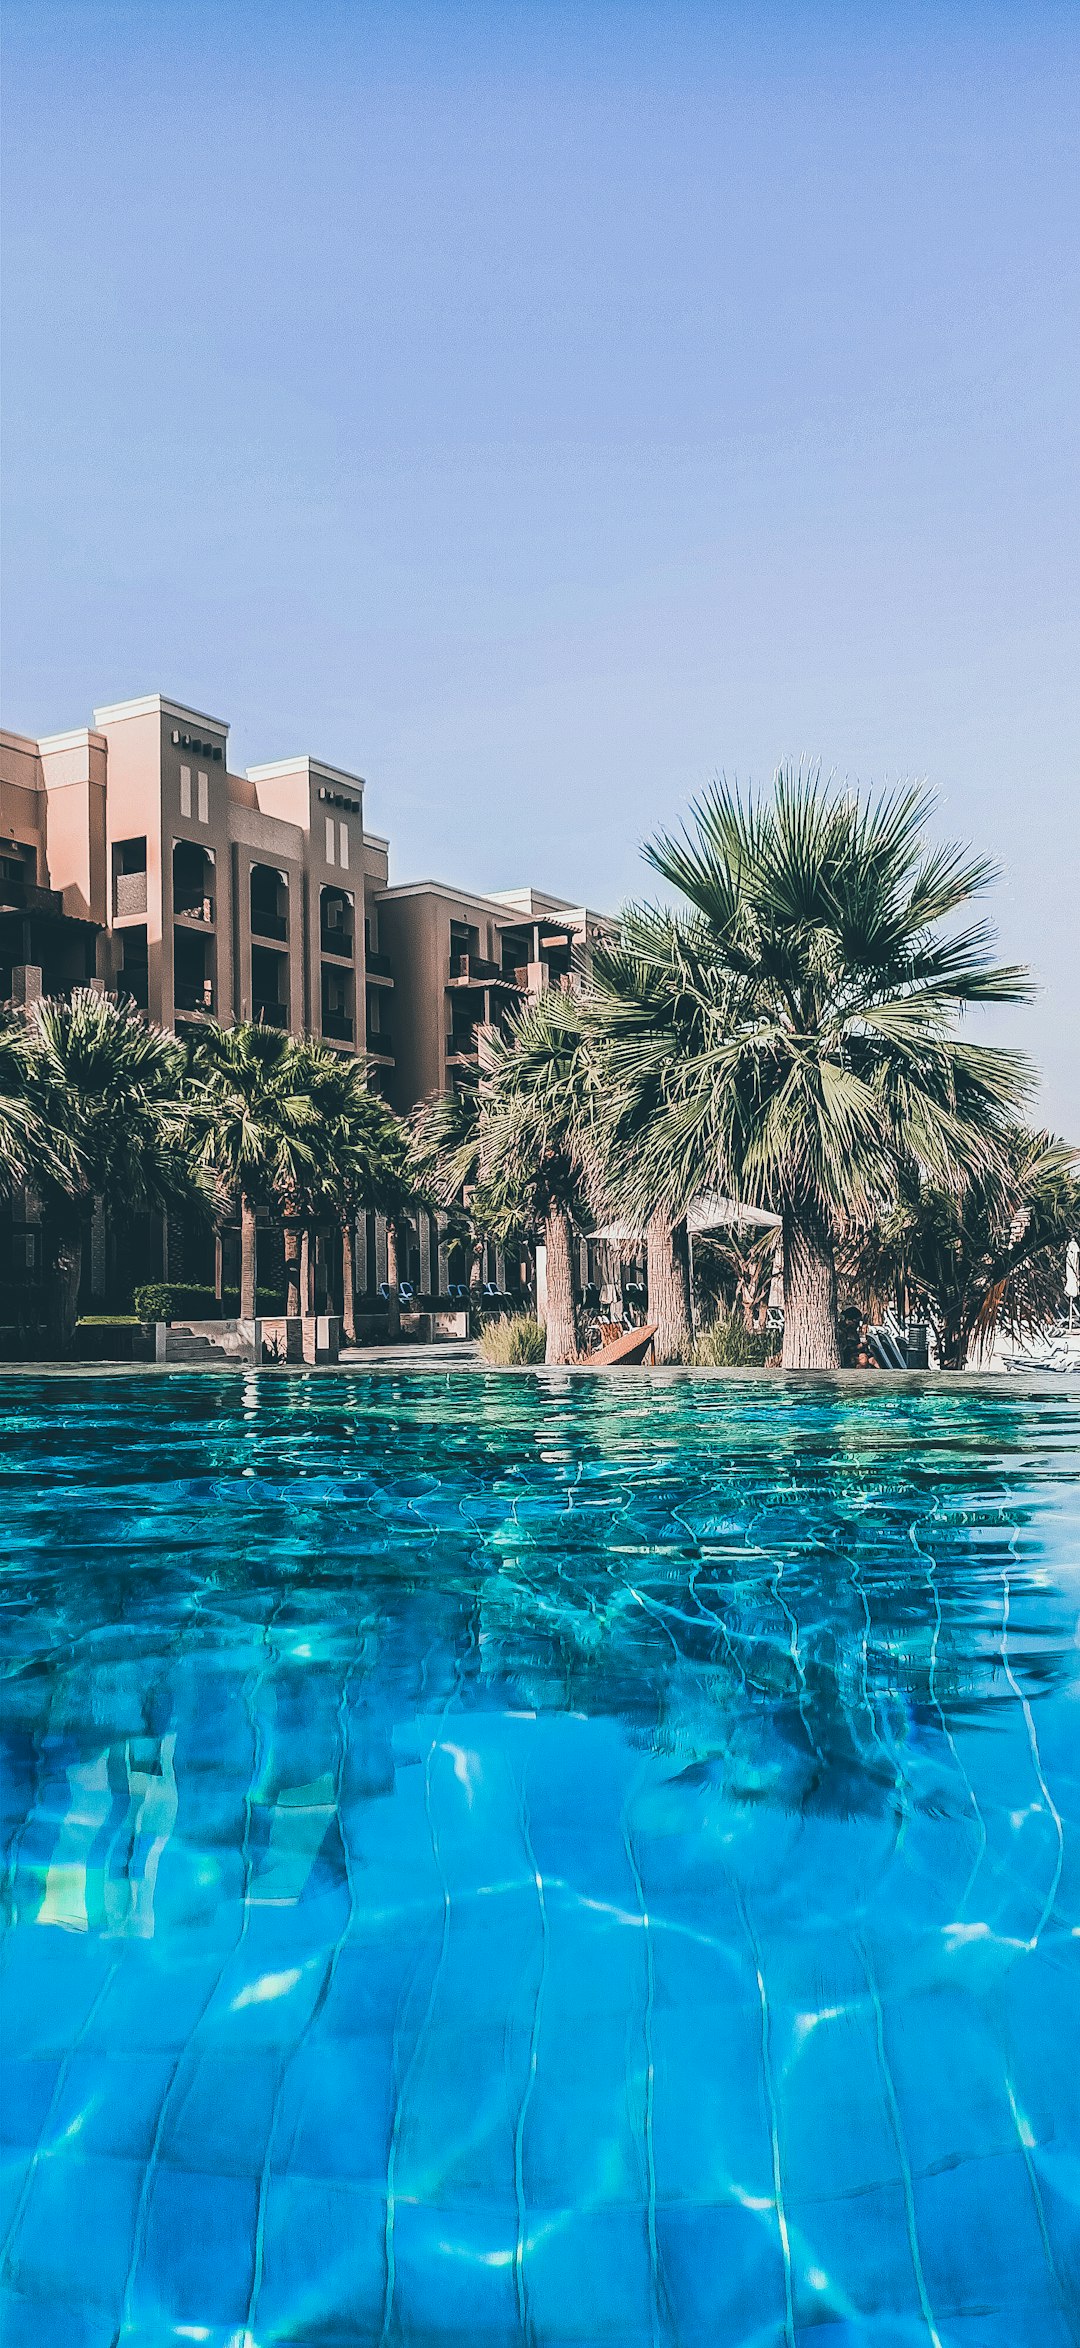 Resort photo spot Ras Al-Khaimah - Ras al Khaimah - United Arab Emirates Dubai